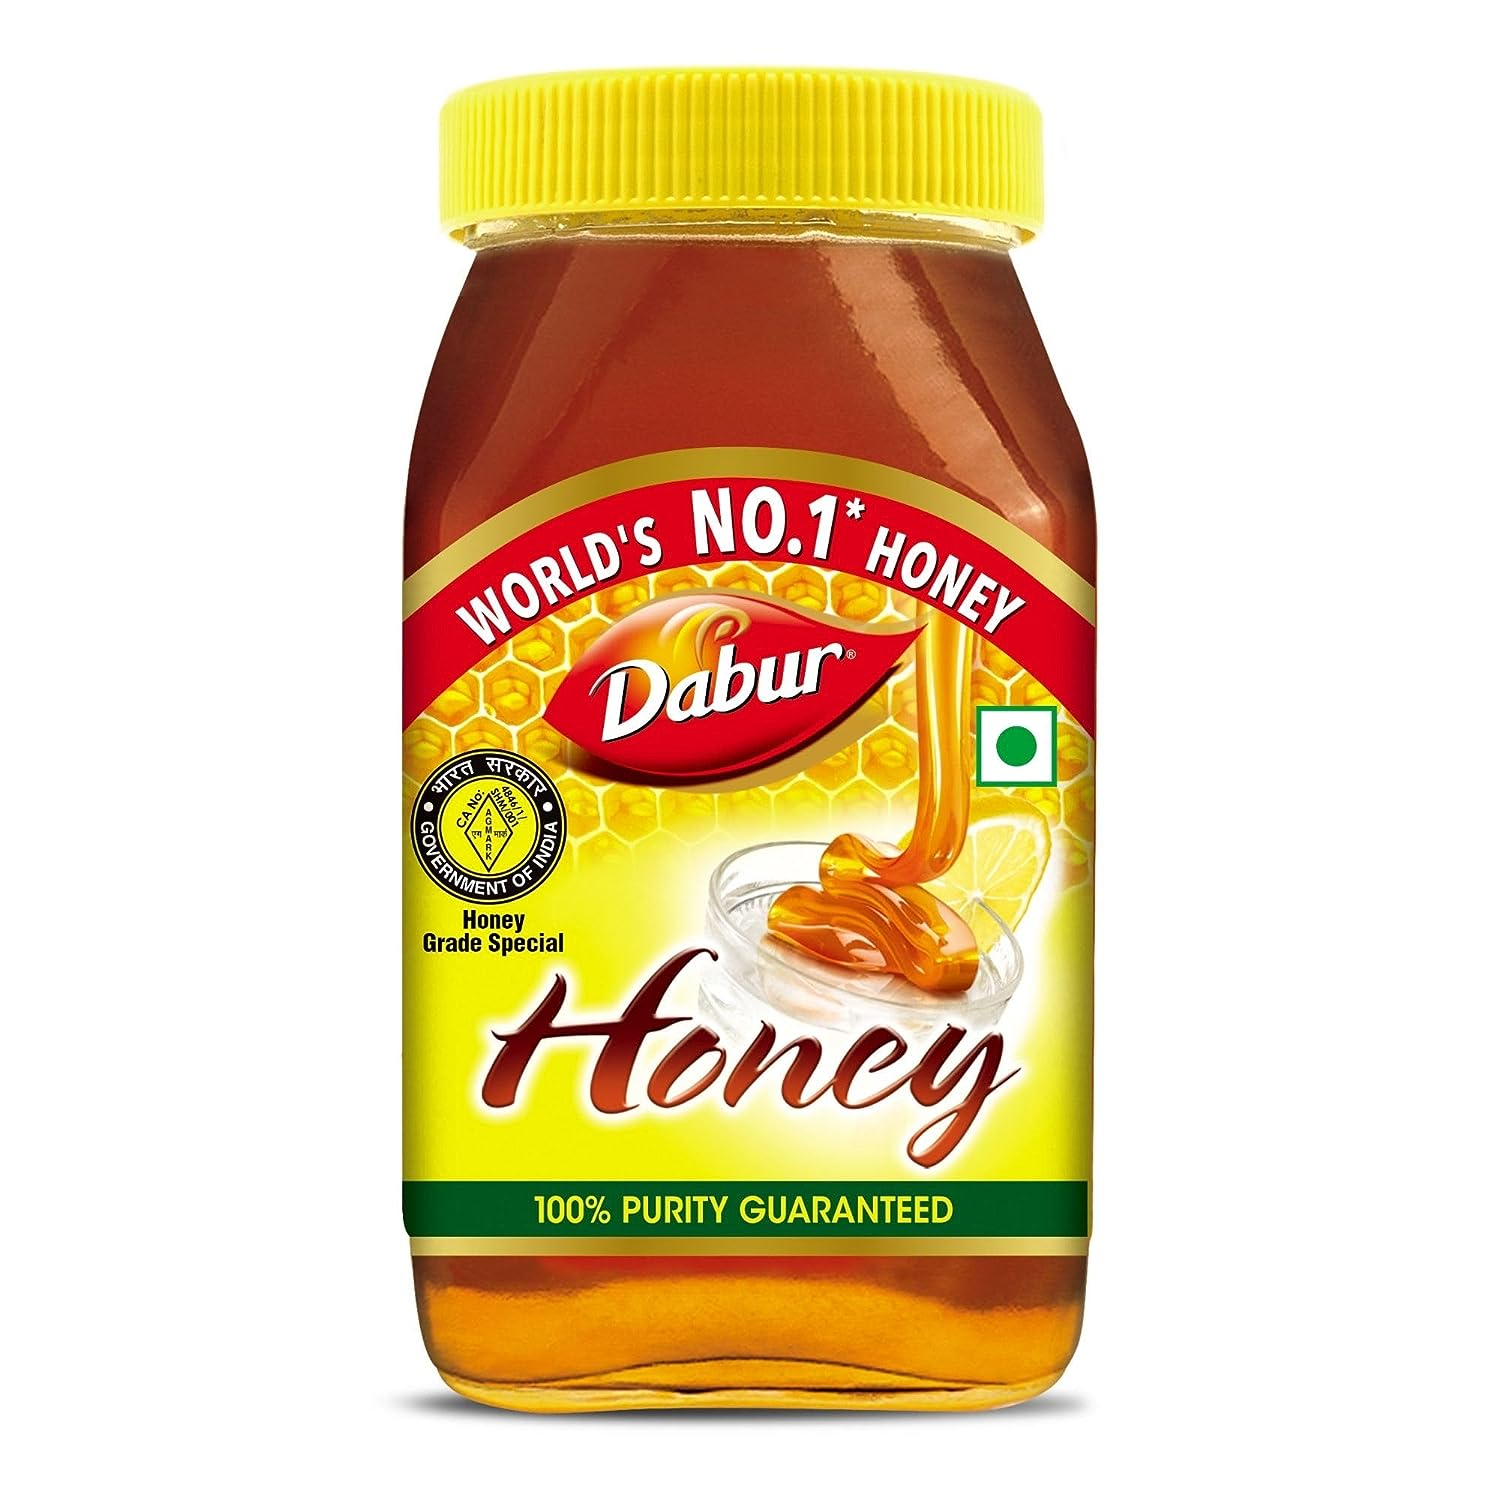 Dabur Honey – 1kg | 100% Pure | World’s No.1 Honey Brand with No Sugar Adulteration